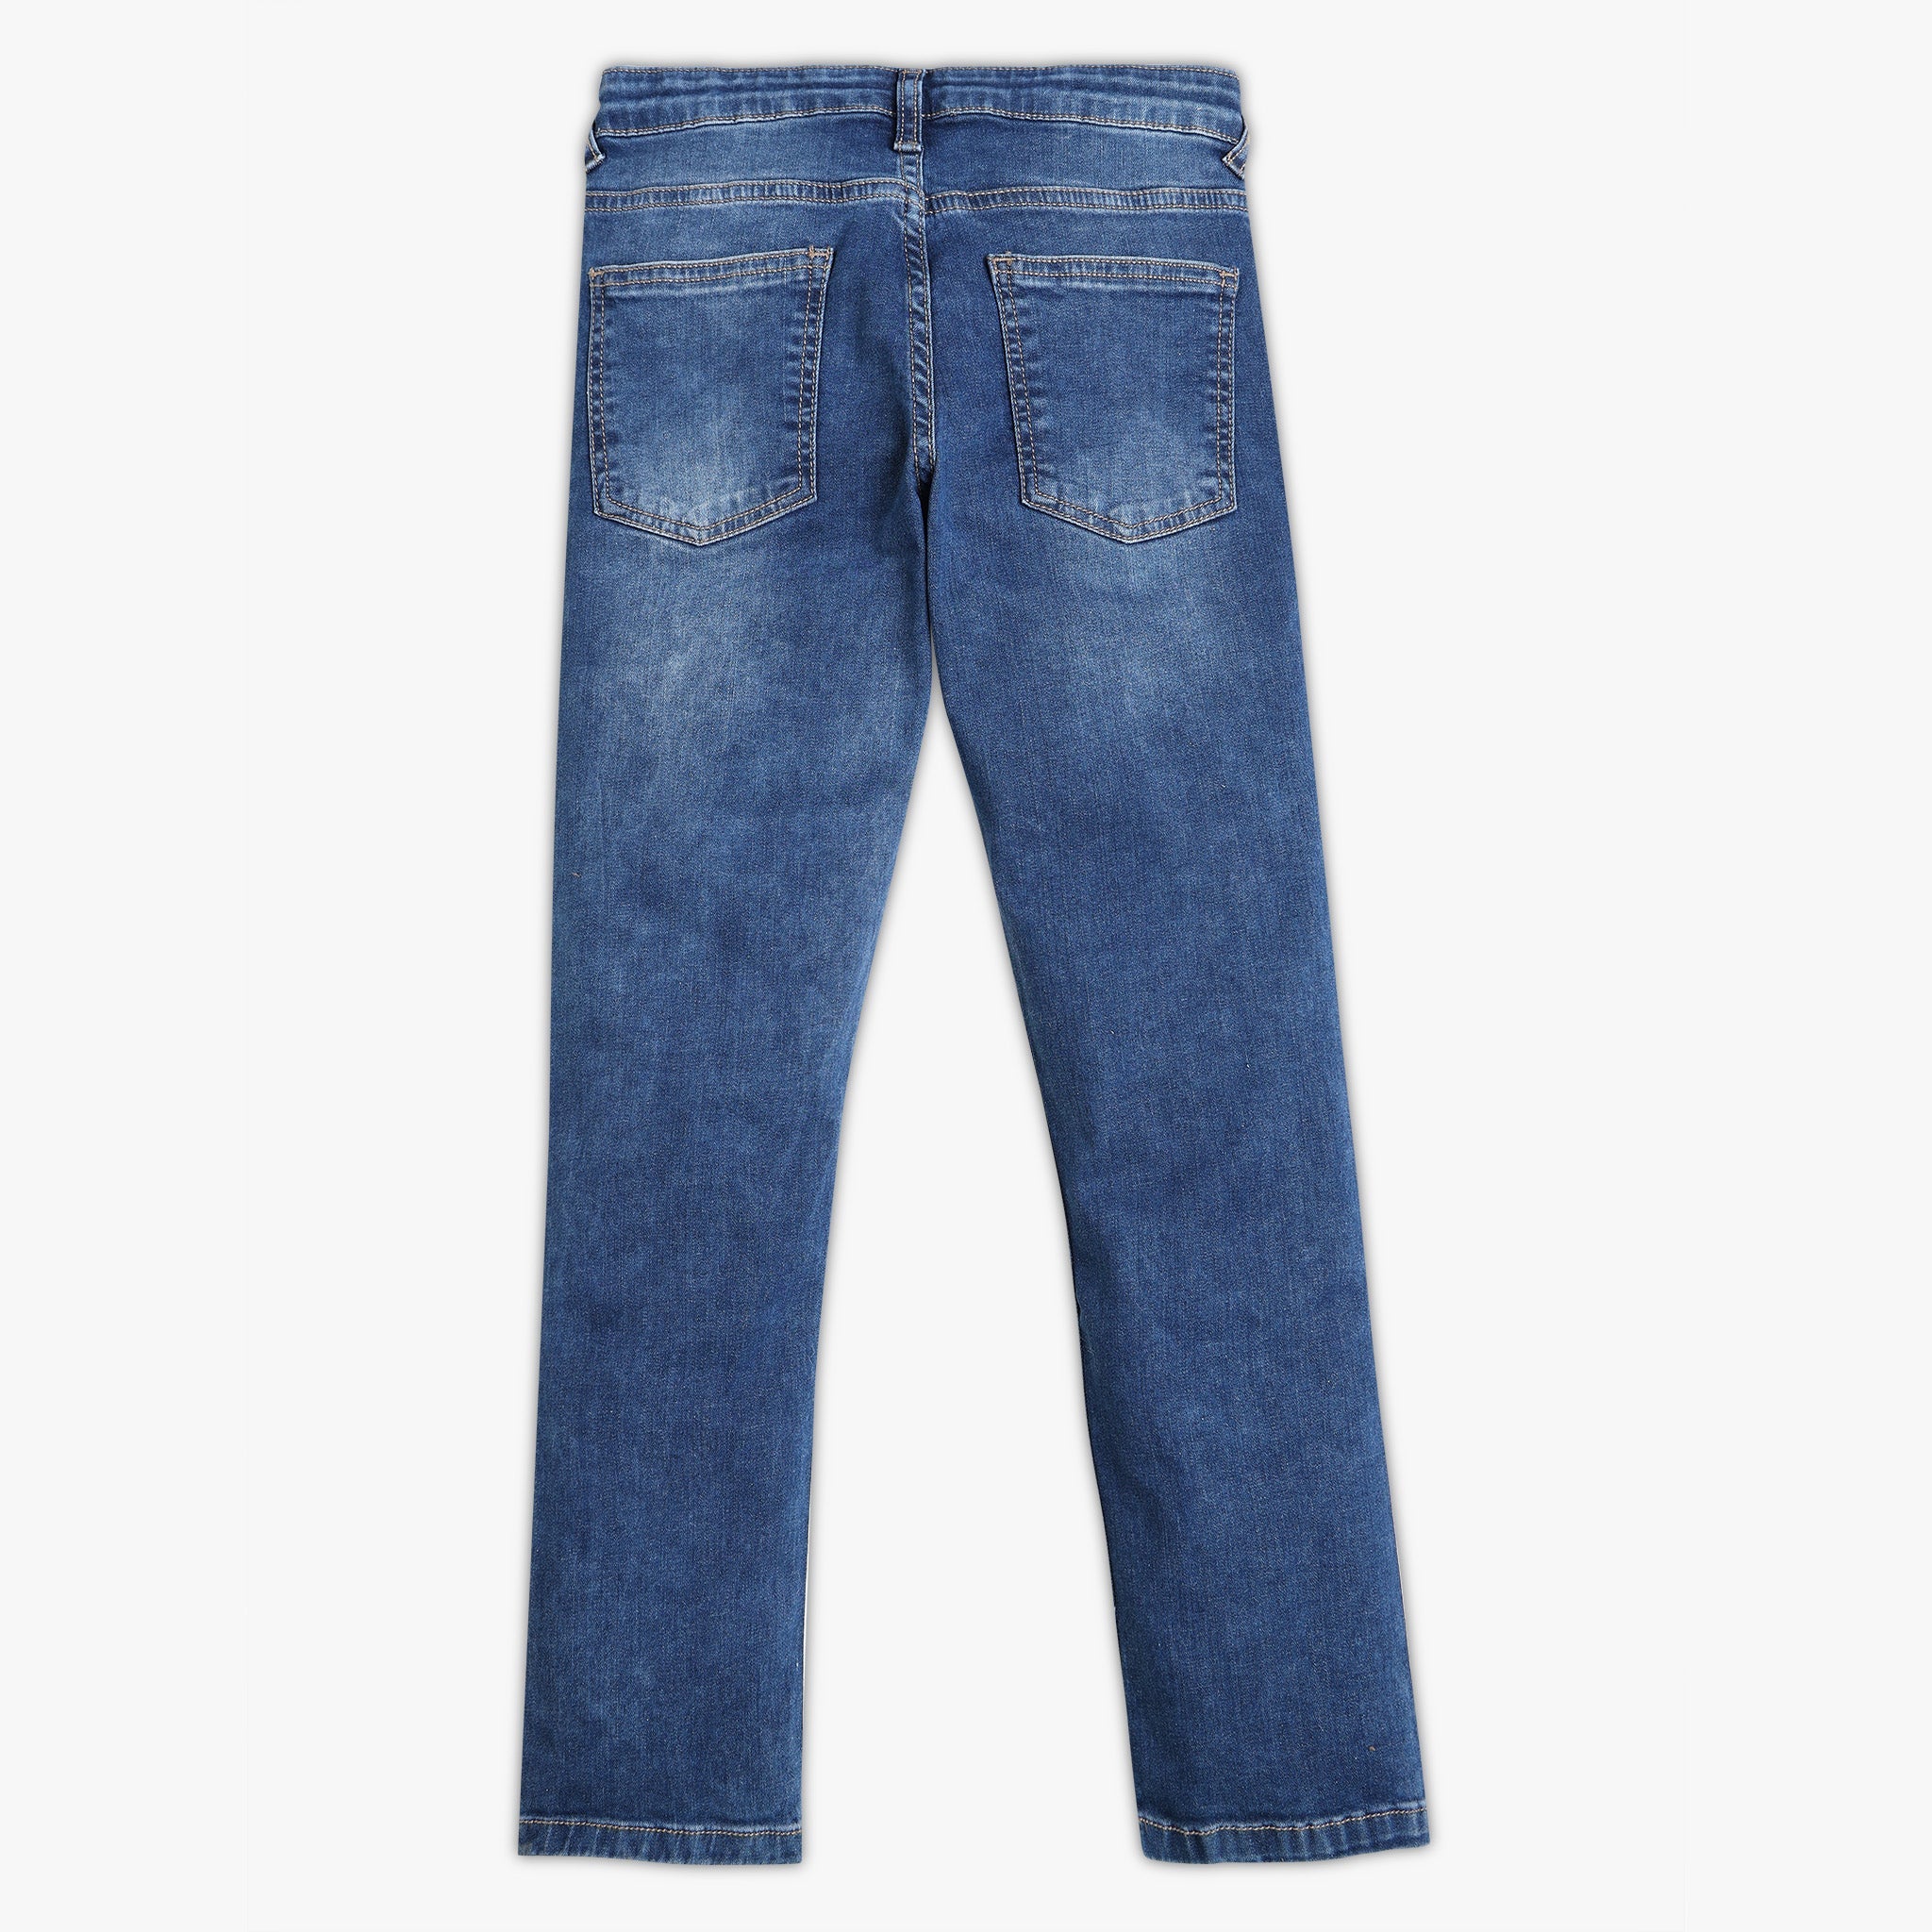 small and medium boys' jeans 2022| Alibaba.com